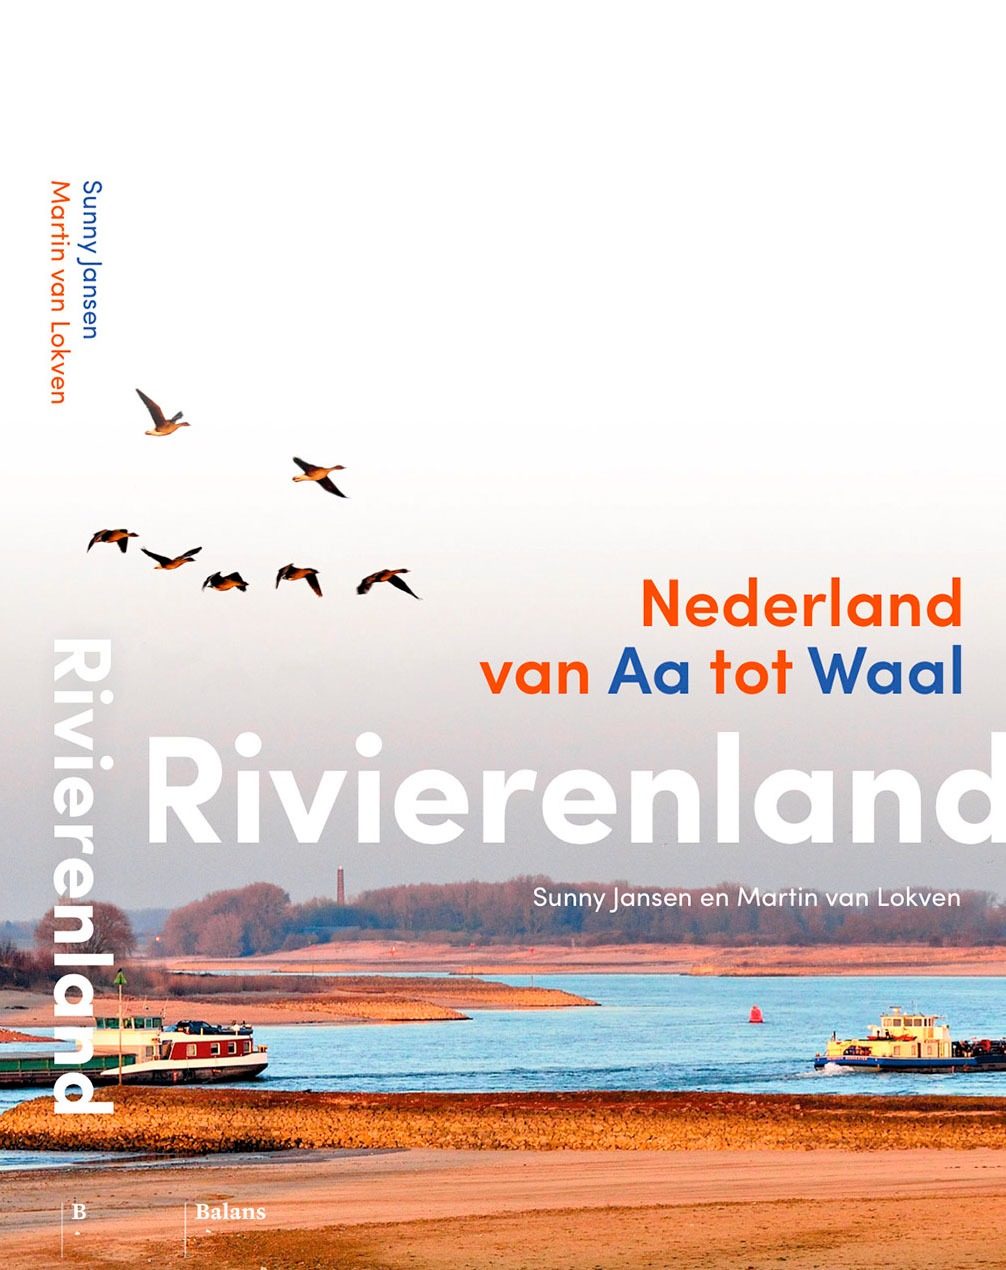 Cover book Rivierenland Nederland van Aa tot Waal